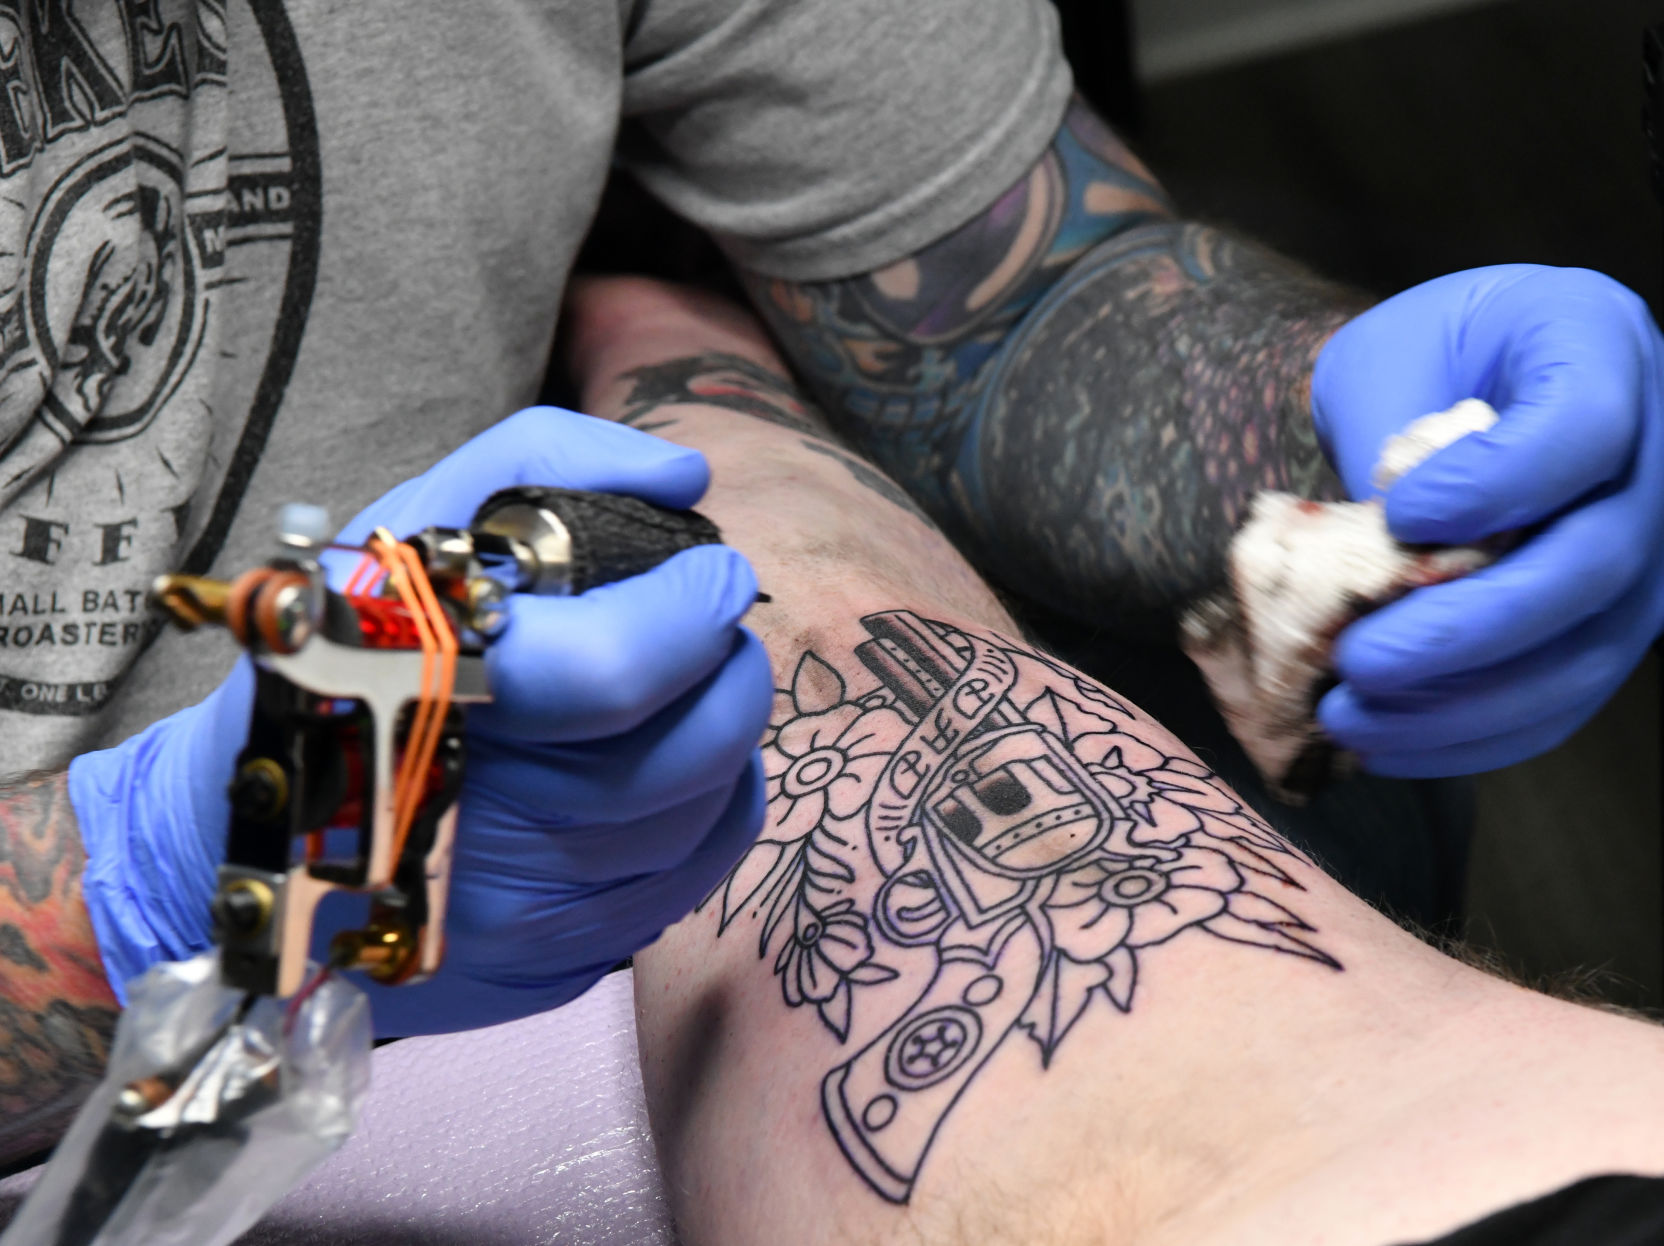 Rhey Tattoos - Small tattoo Artist : Rocky Rhey Tattoos is most creative  and best tattoo studio in kolkata www.rheytattoos.com 7980960422 8697685862  #rheytattoos #rheytattooskolkata #rheytattoostudio #rose #rosetattoo  #rosetattoos #libratattoo ...